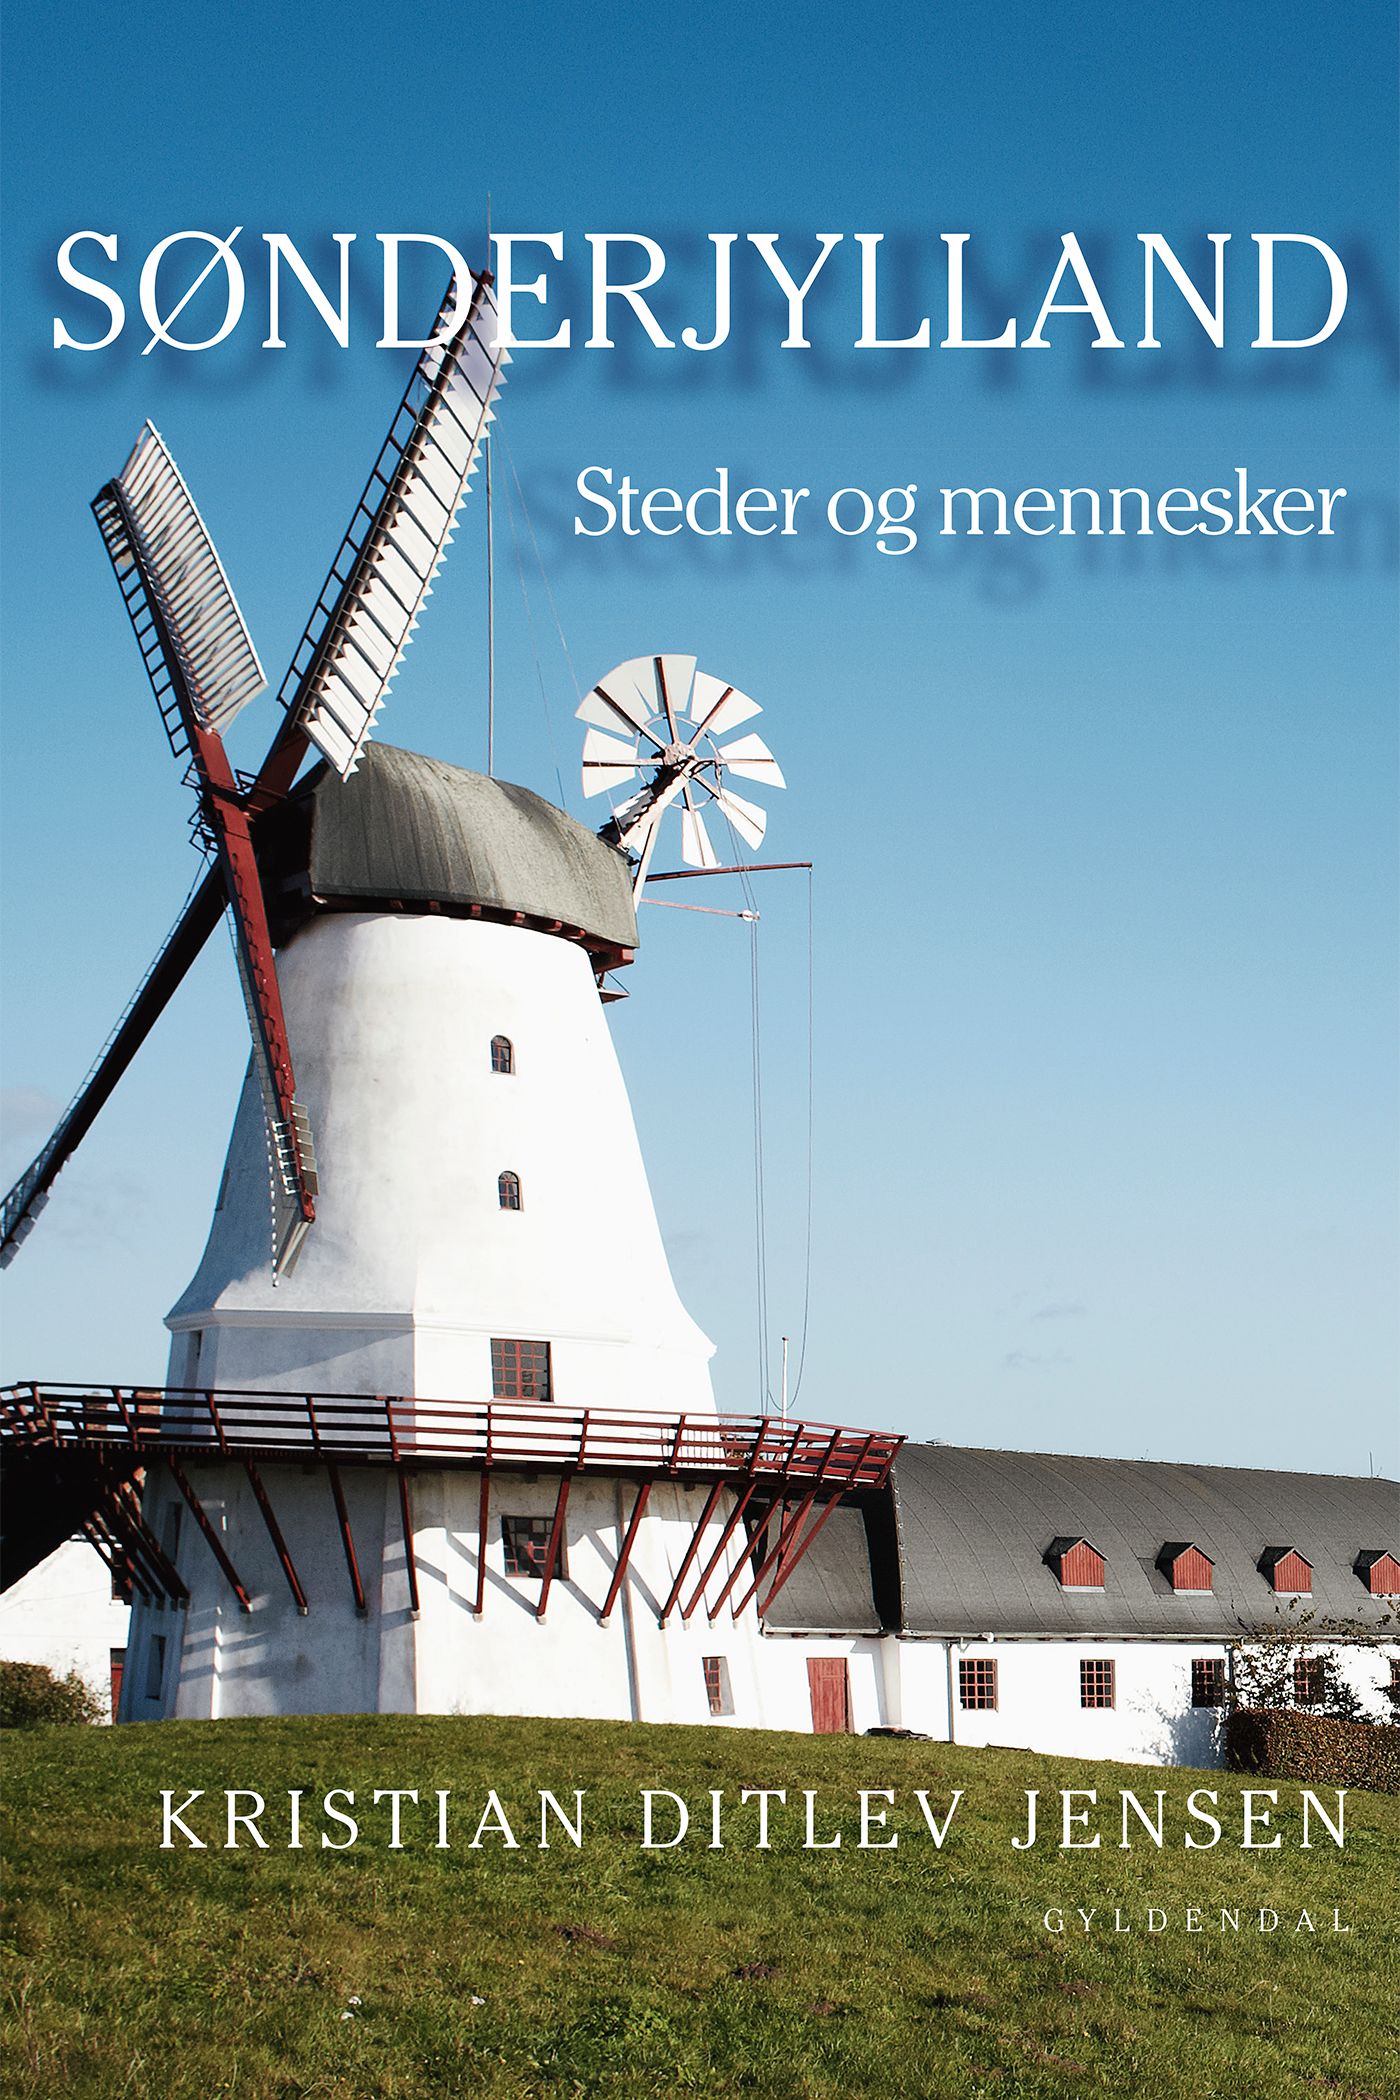 Sønderjylland, e-bog af Kristian Ditlev Jensen